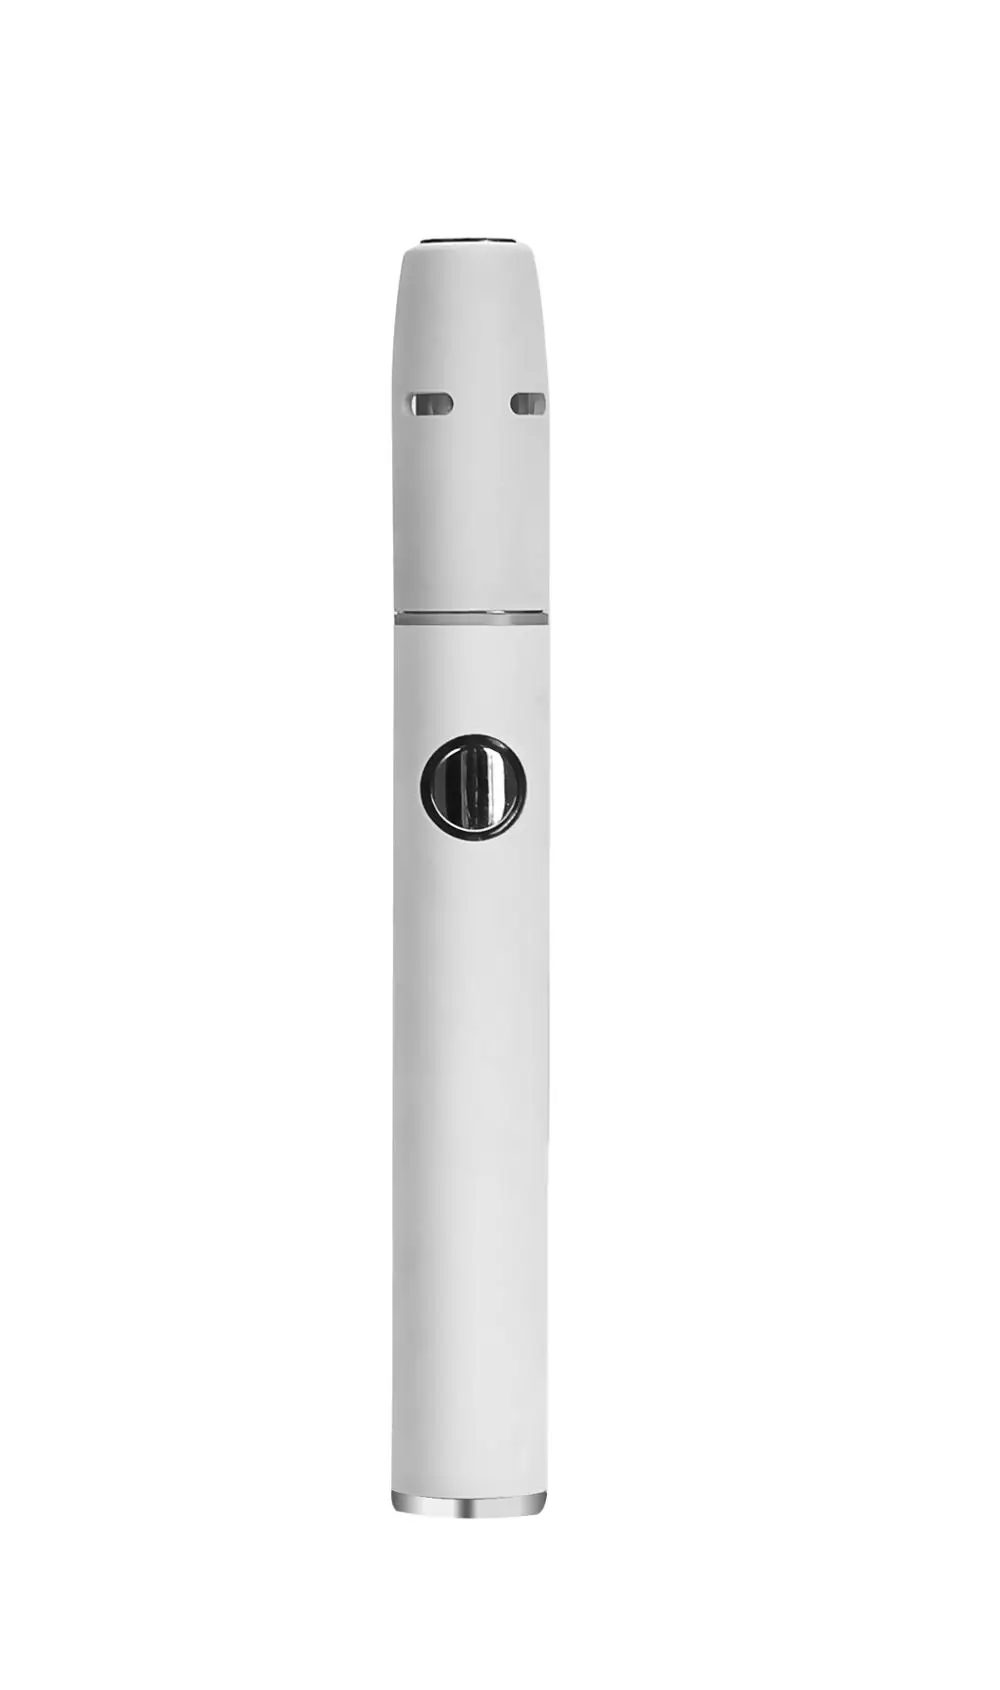 2021 трендовый продукт, электронная сигарета Pluscig V2 с сухими травами, работающая с картриджами и сертификатом KC